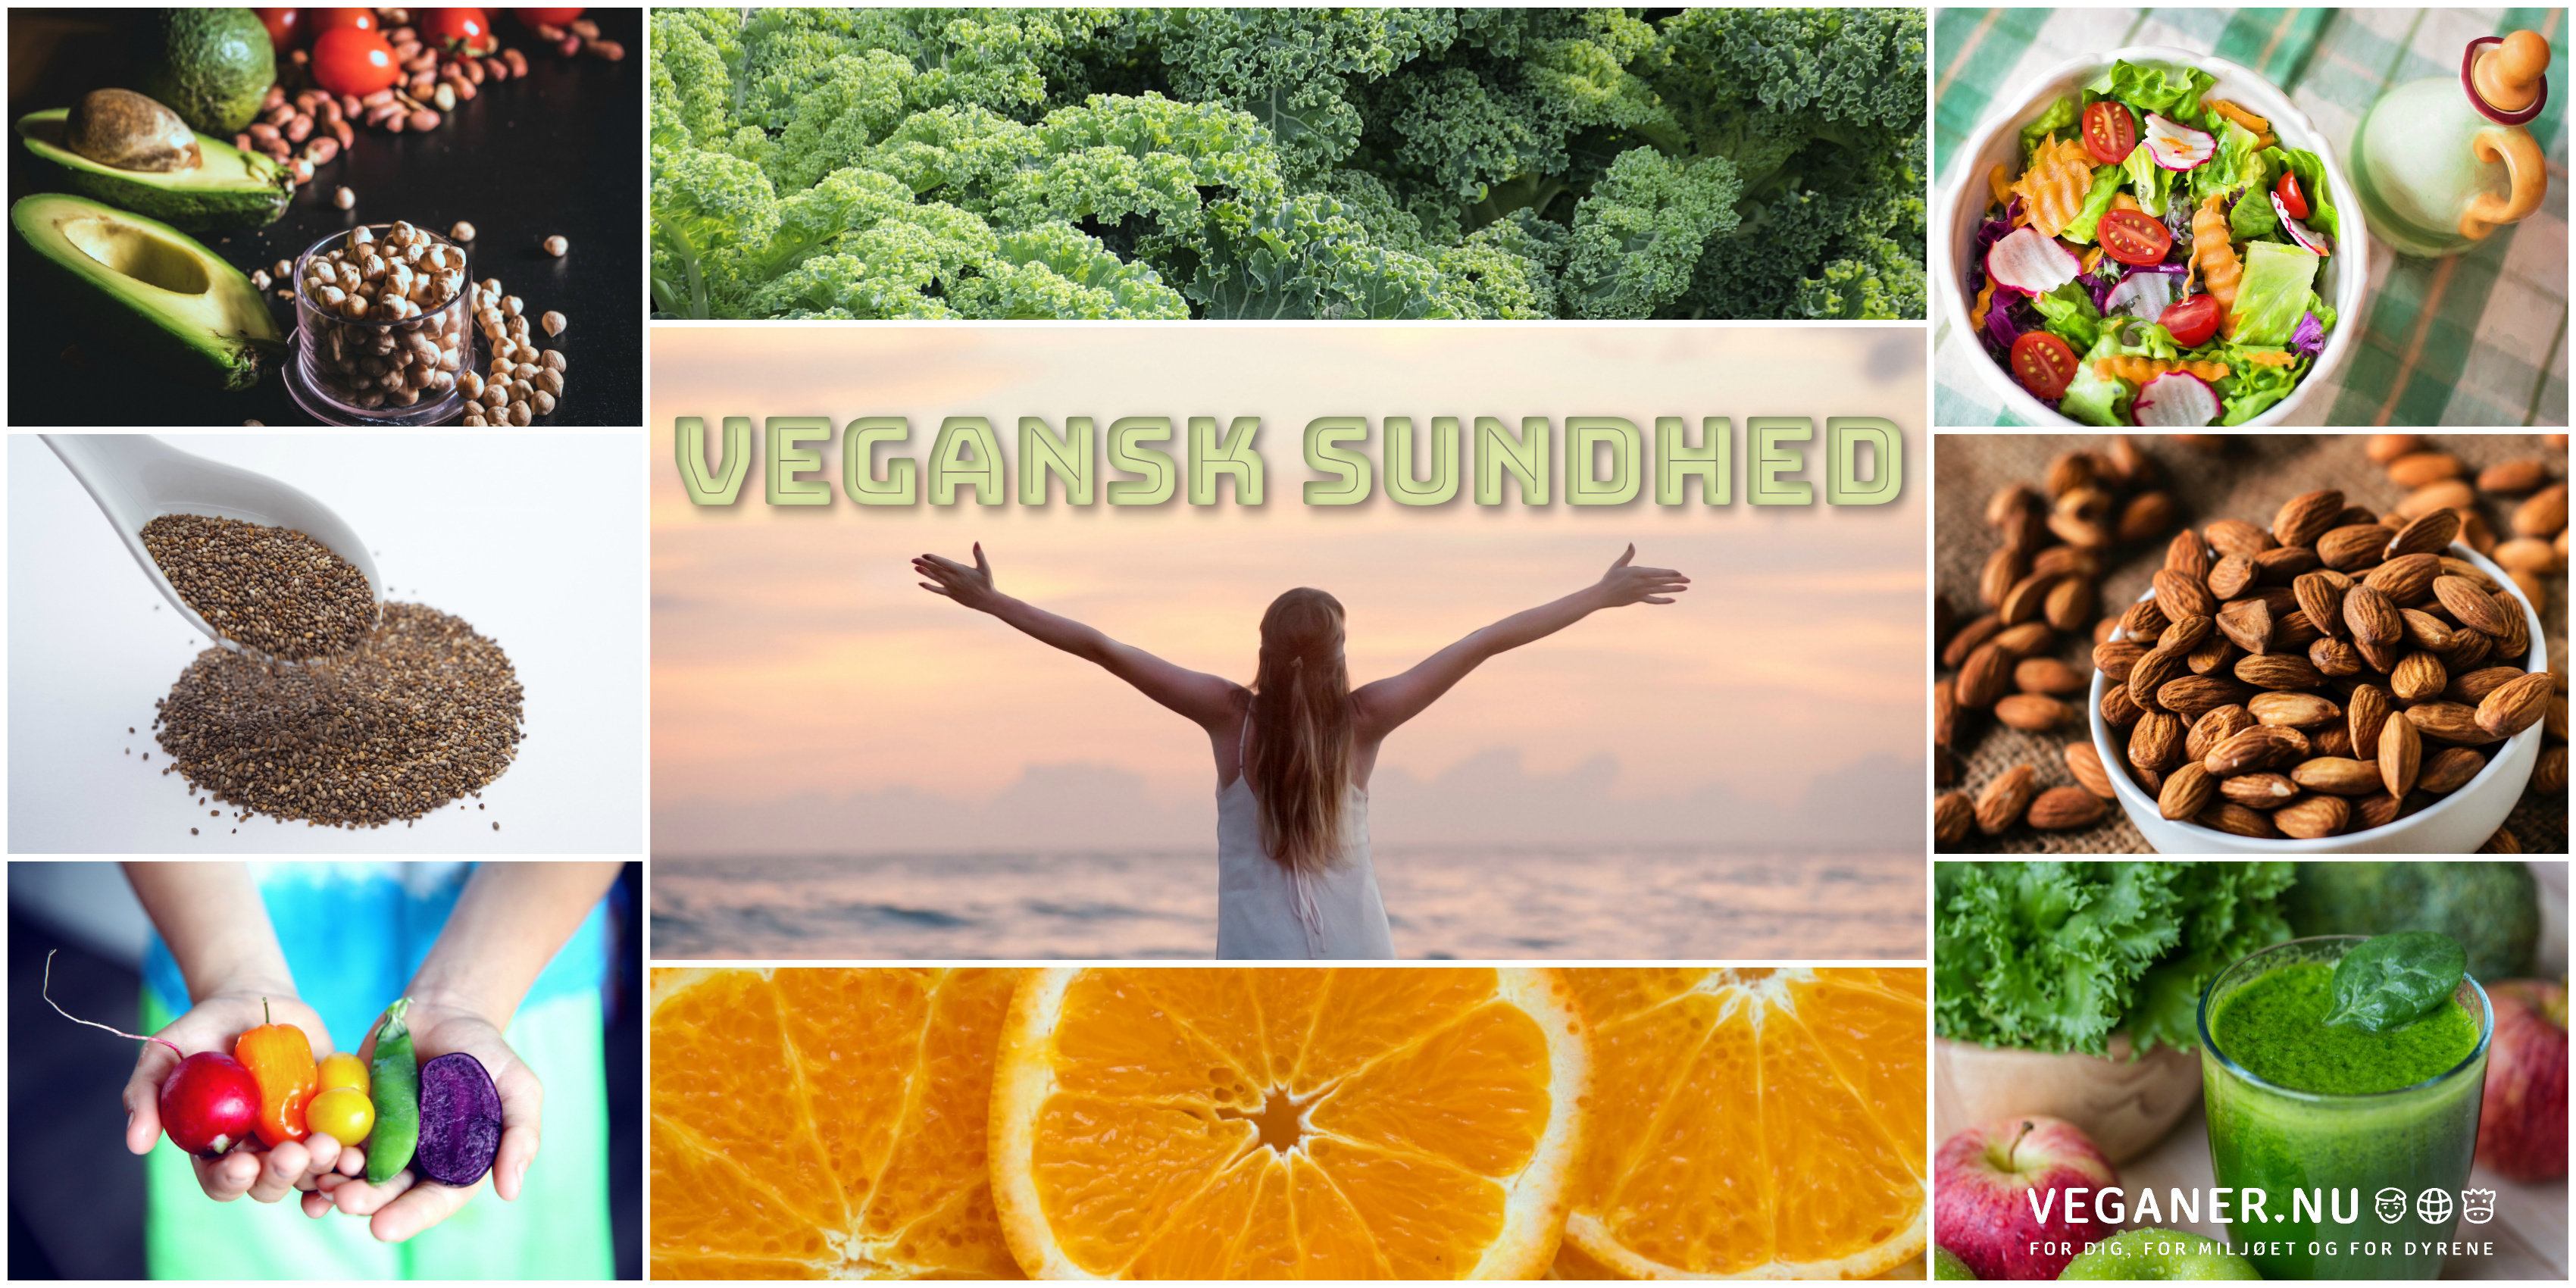 Veganer.nu-vegansk sundhed